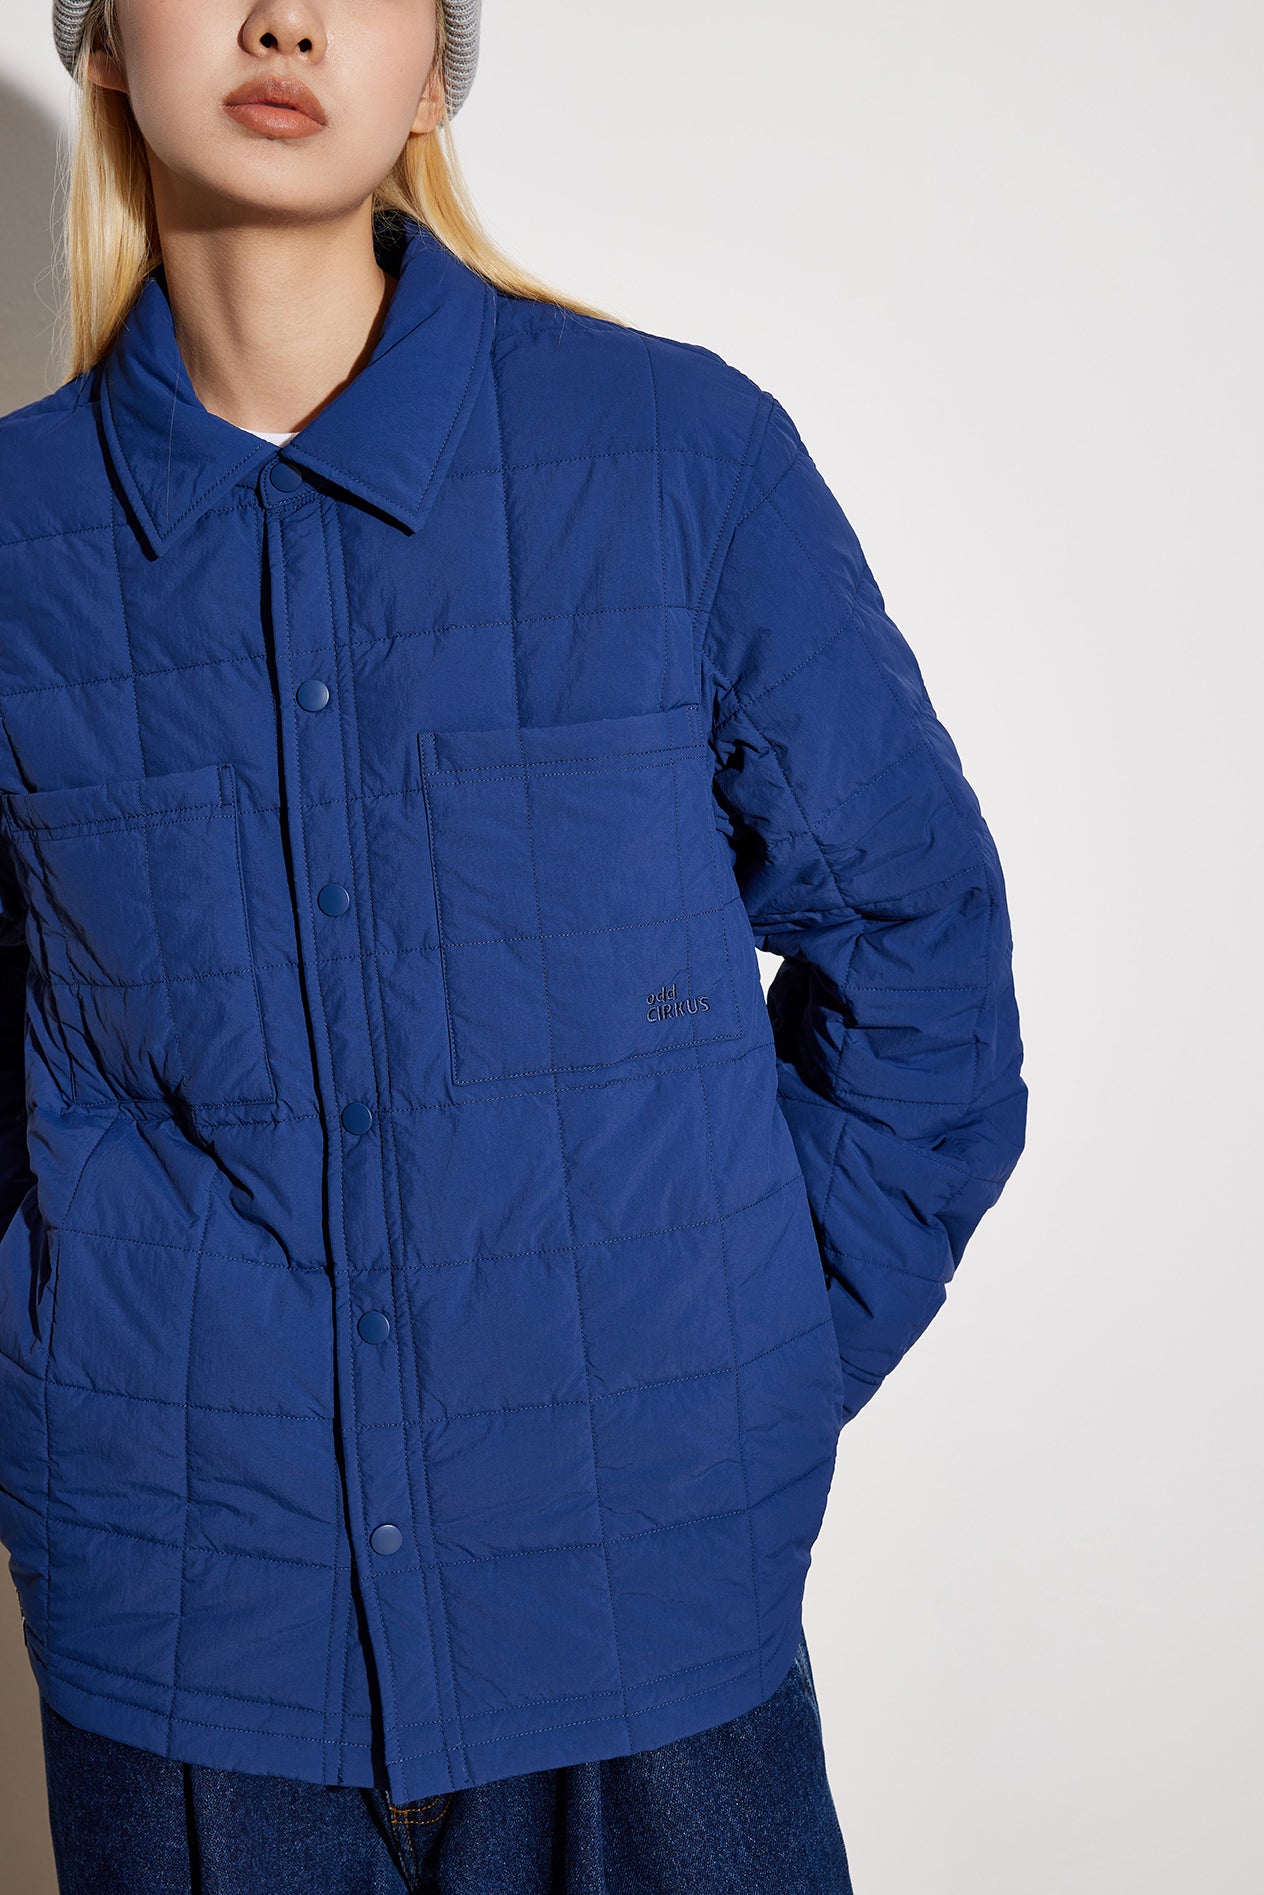 Stitched Jacket - Blue